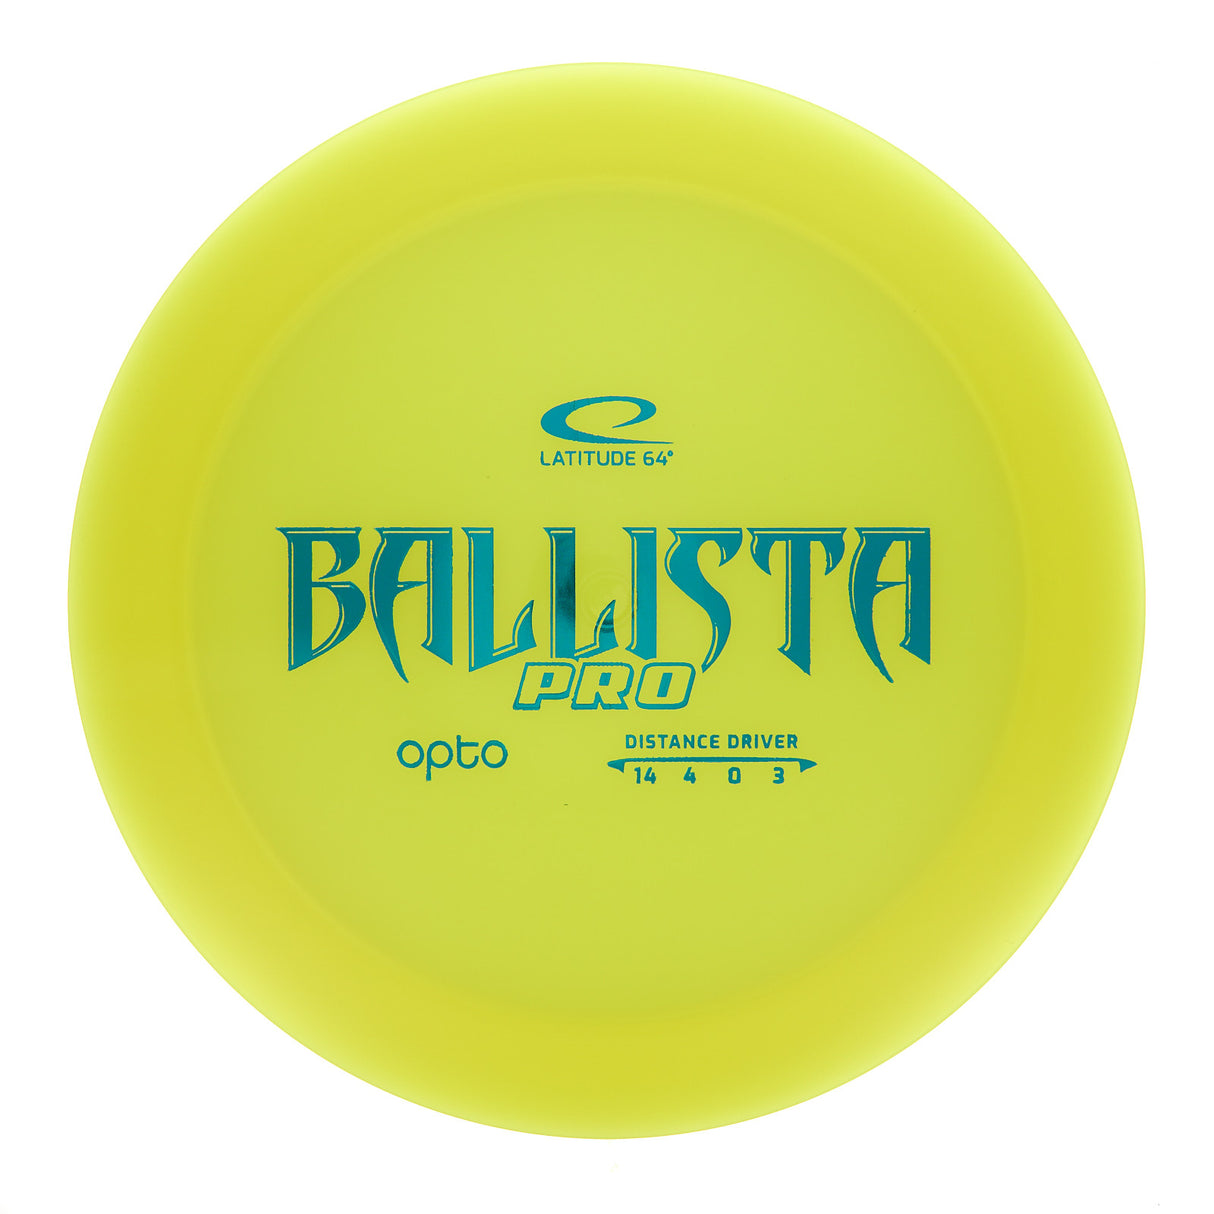 Latitude 64 Ballista Pro - Opto 173g | Style 0001